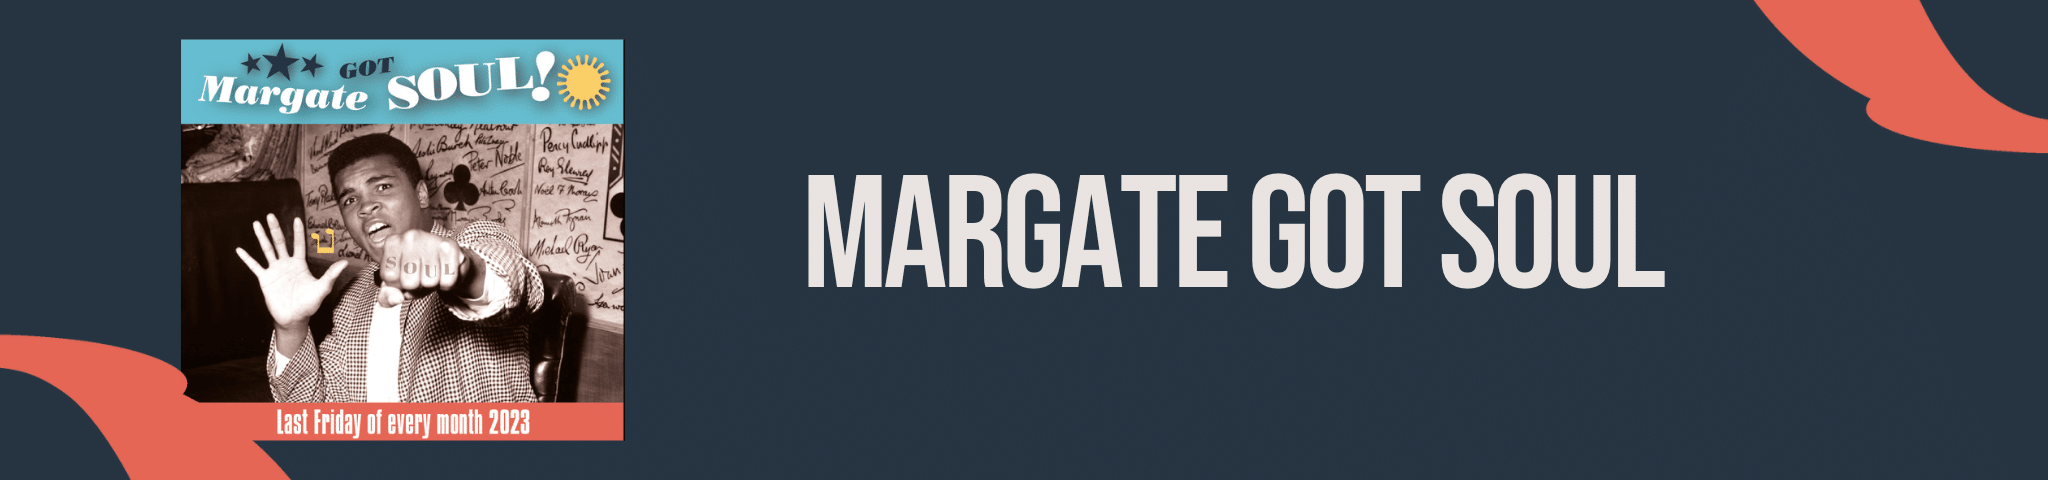 MARGATE GOT SOUL – 29TH DECEMBER 2023